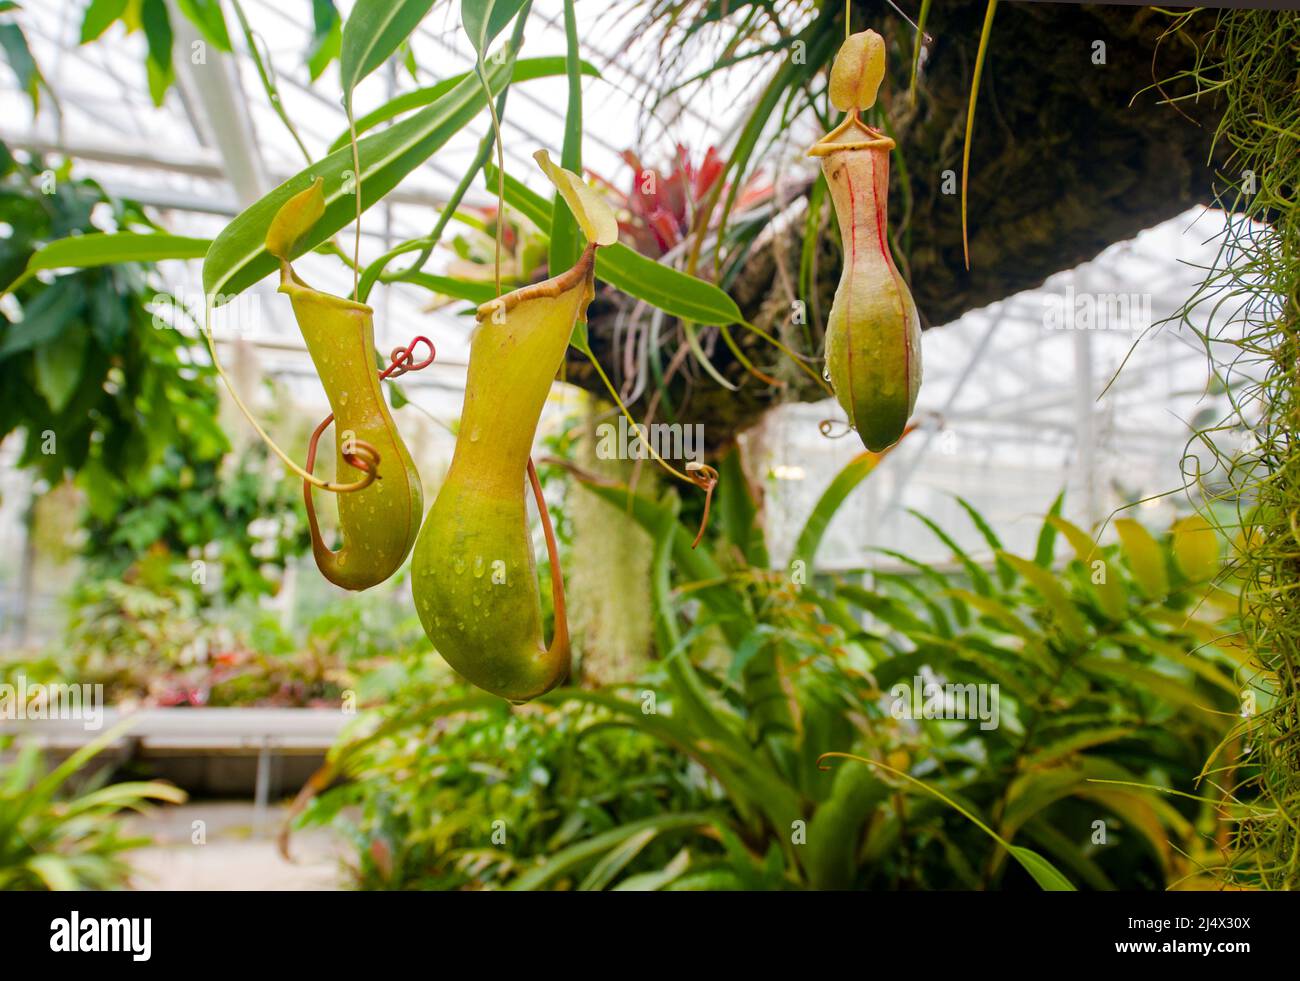 Les jardins suspendus (Jardins suspendus) du Havre, France, incorporent des serres aux plantes tropicales et carnivores Banque D'Images